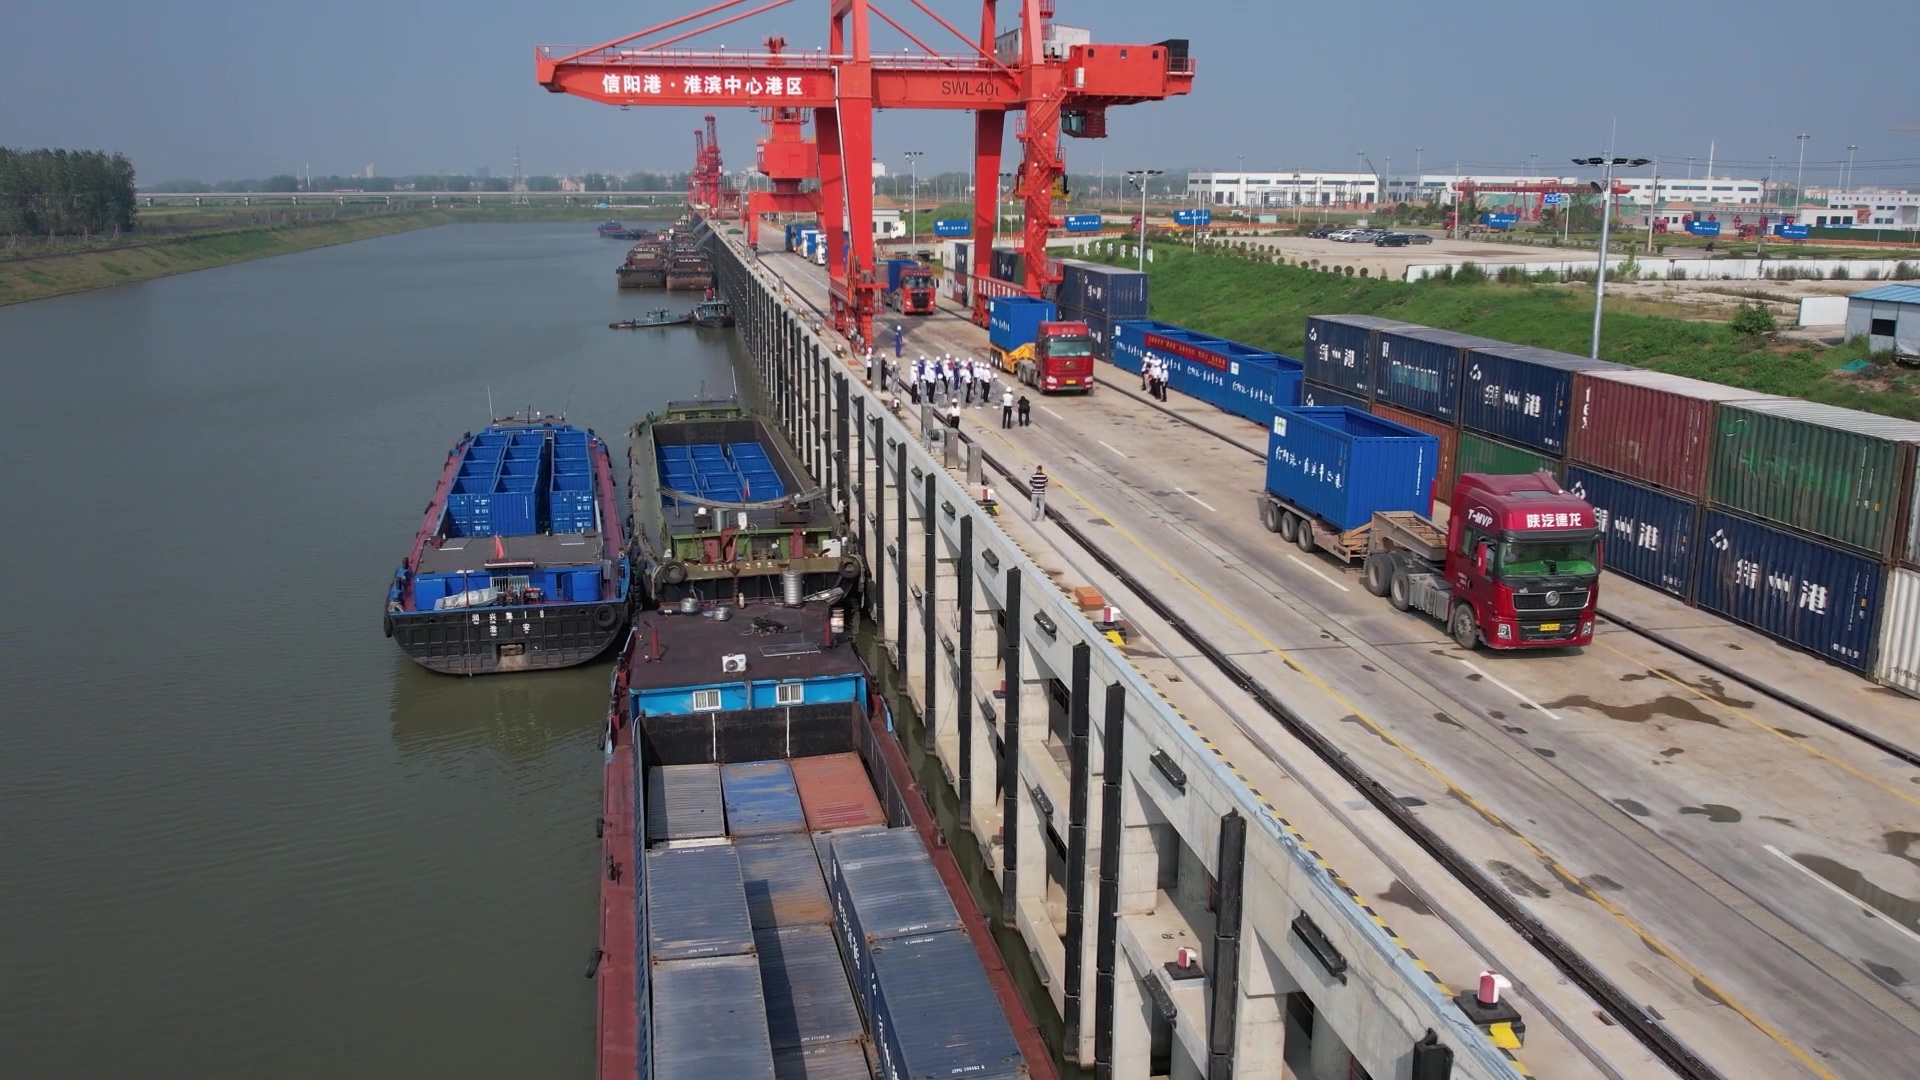 437必赢会员中心中标信阳港固始港建设工程检测试验技术服务项目